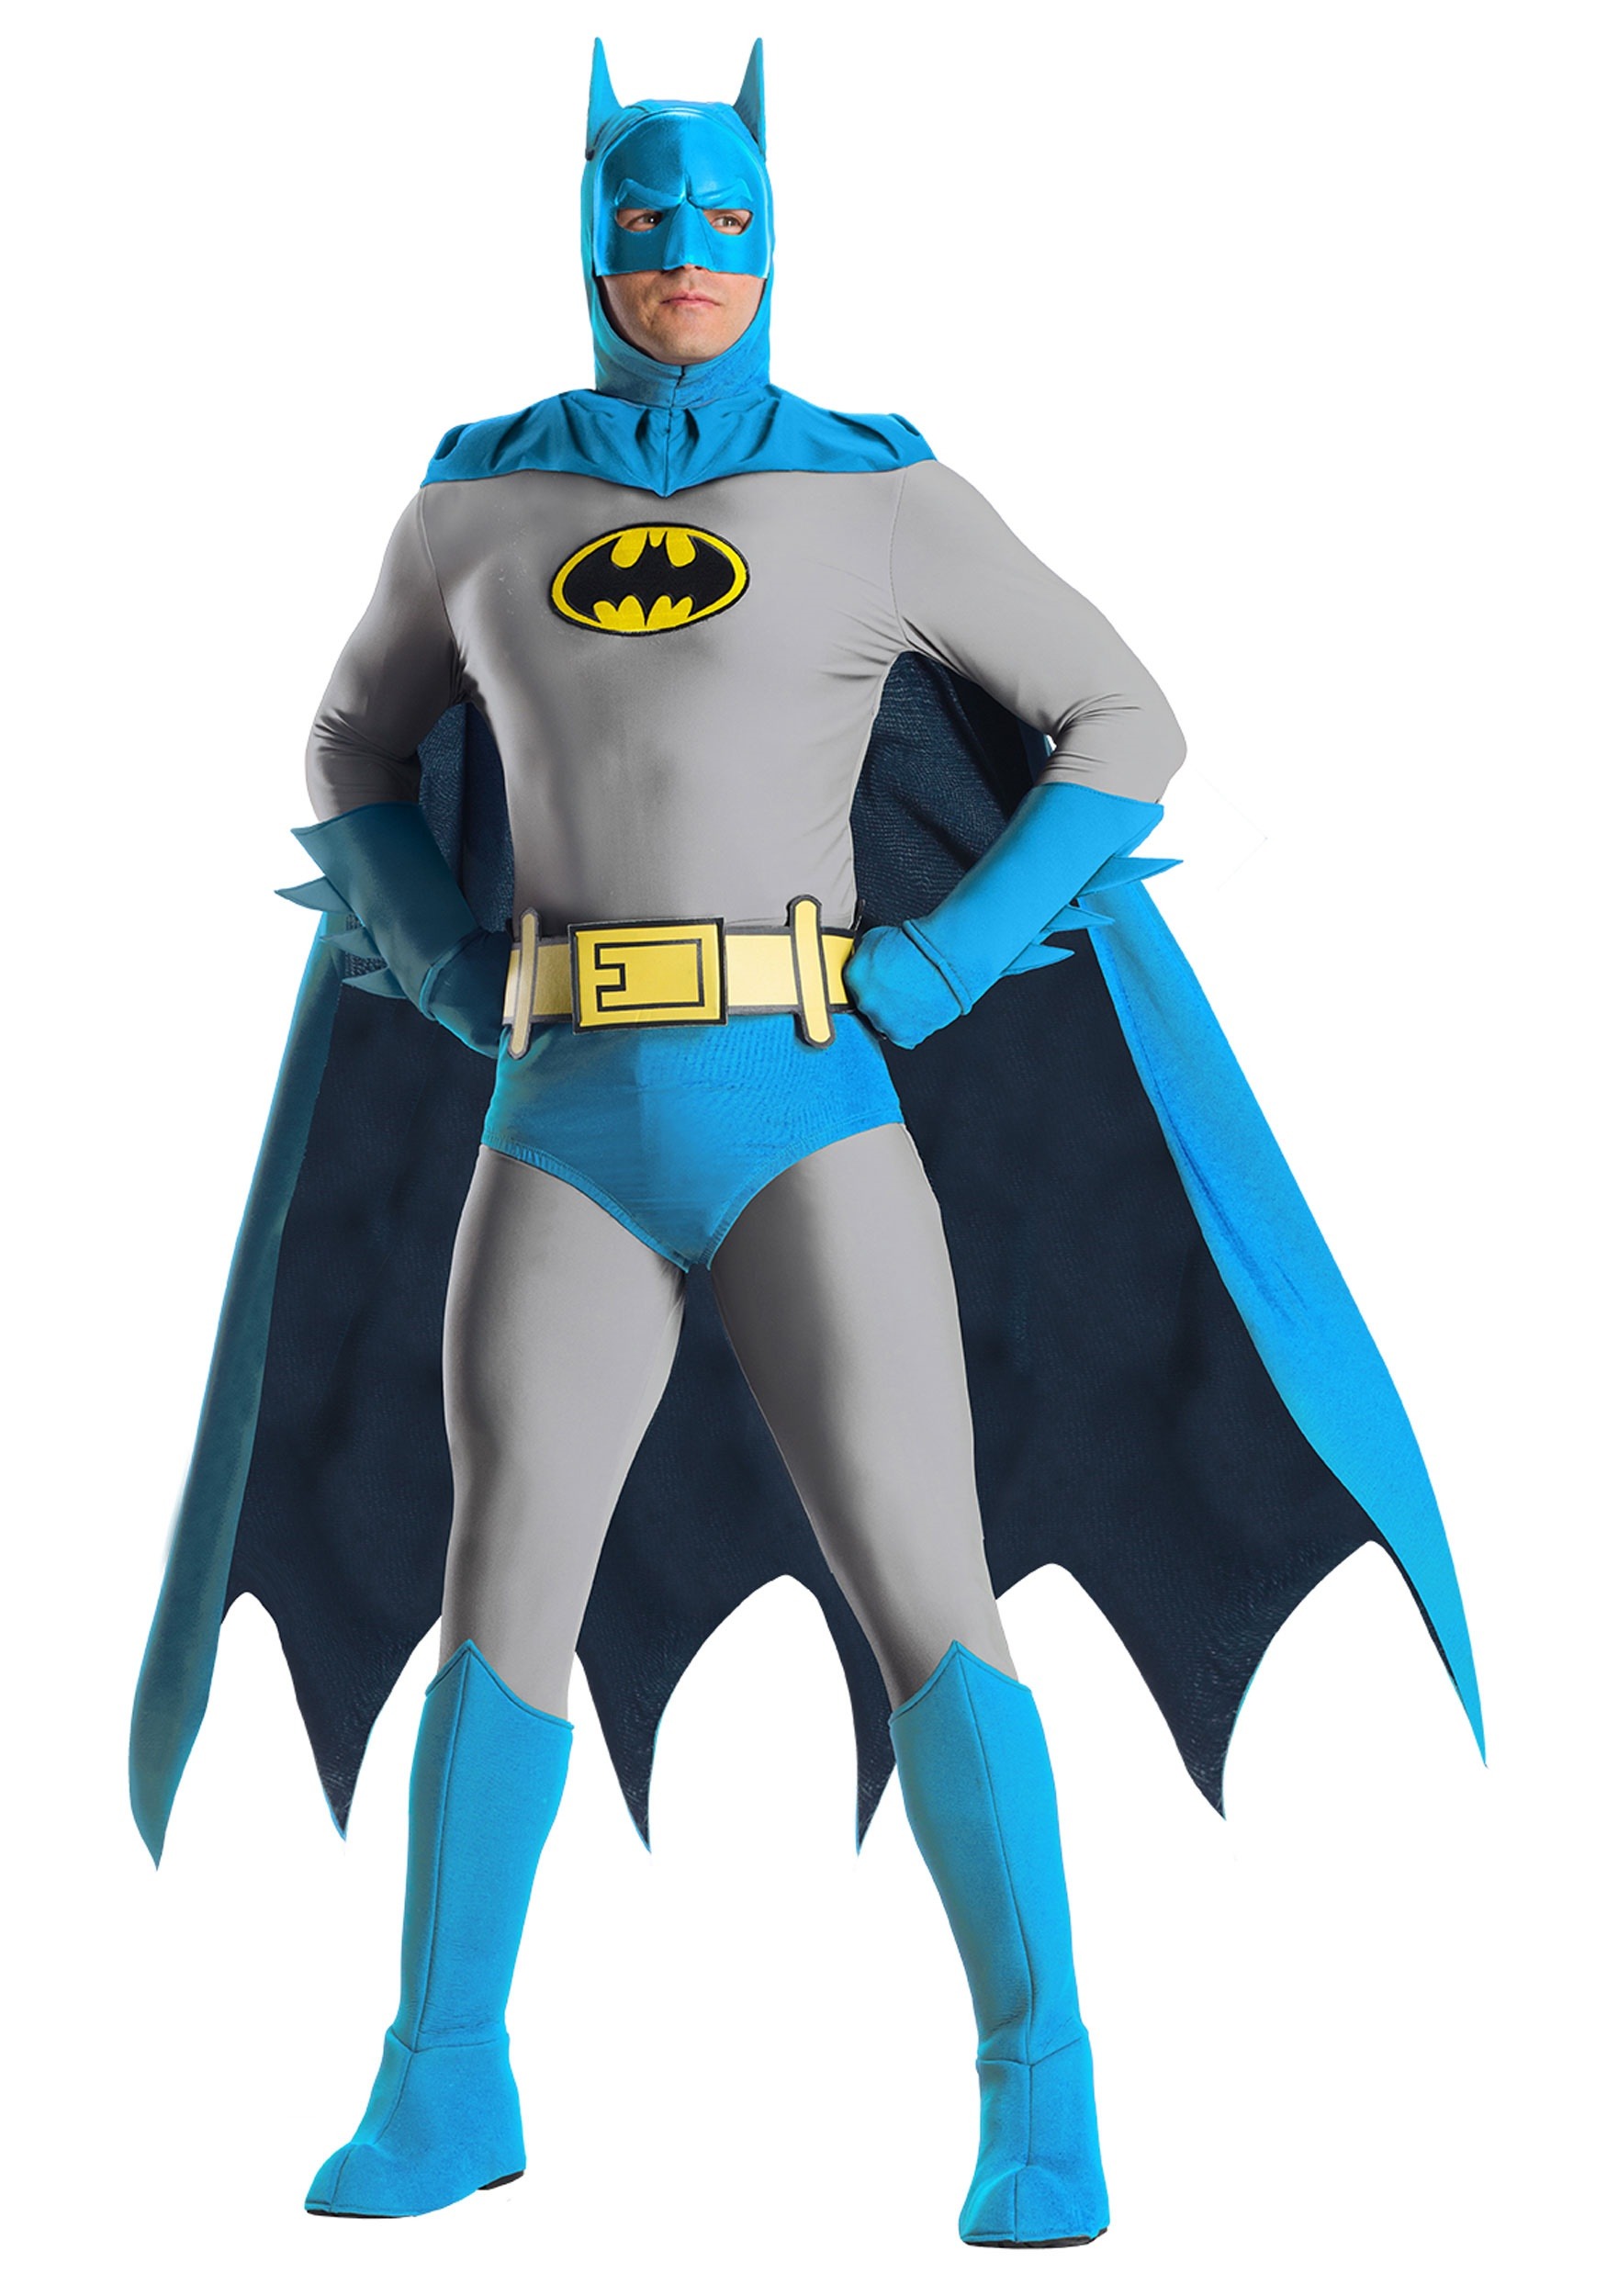  Batman Costume